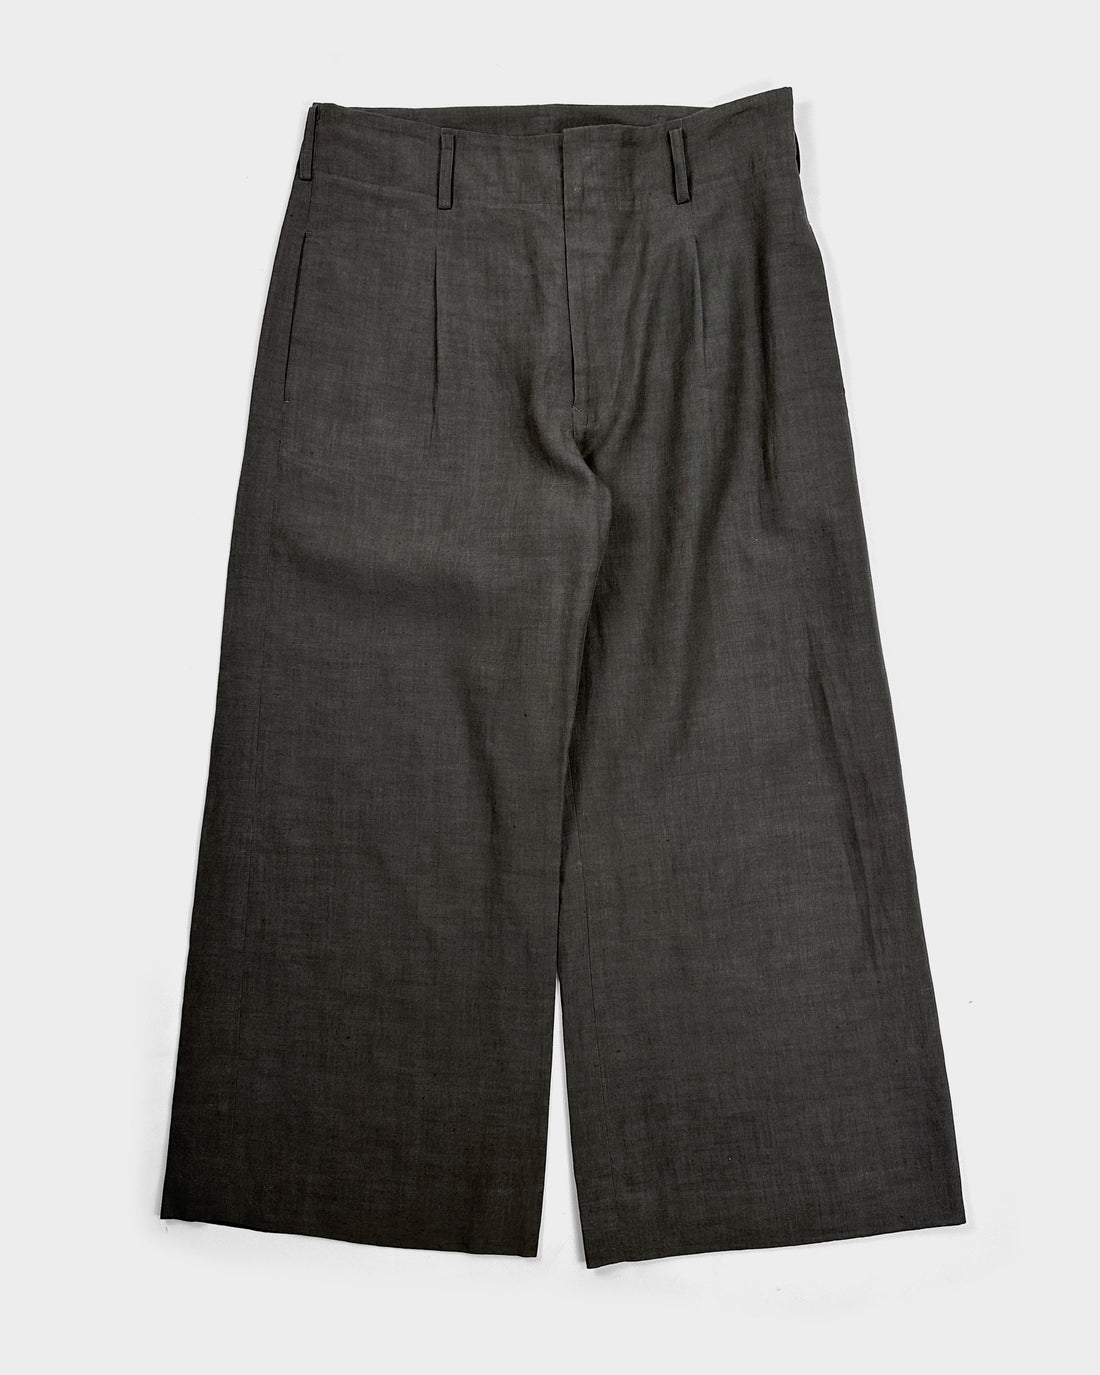 Yohji Yamamoto Deep Grey Linen Pants 2000's